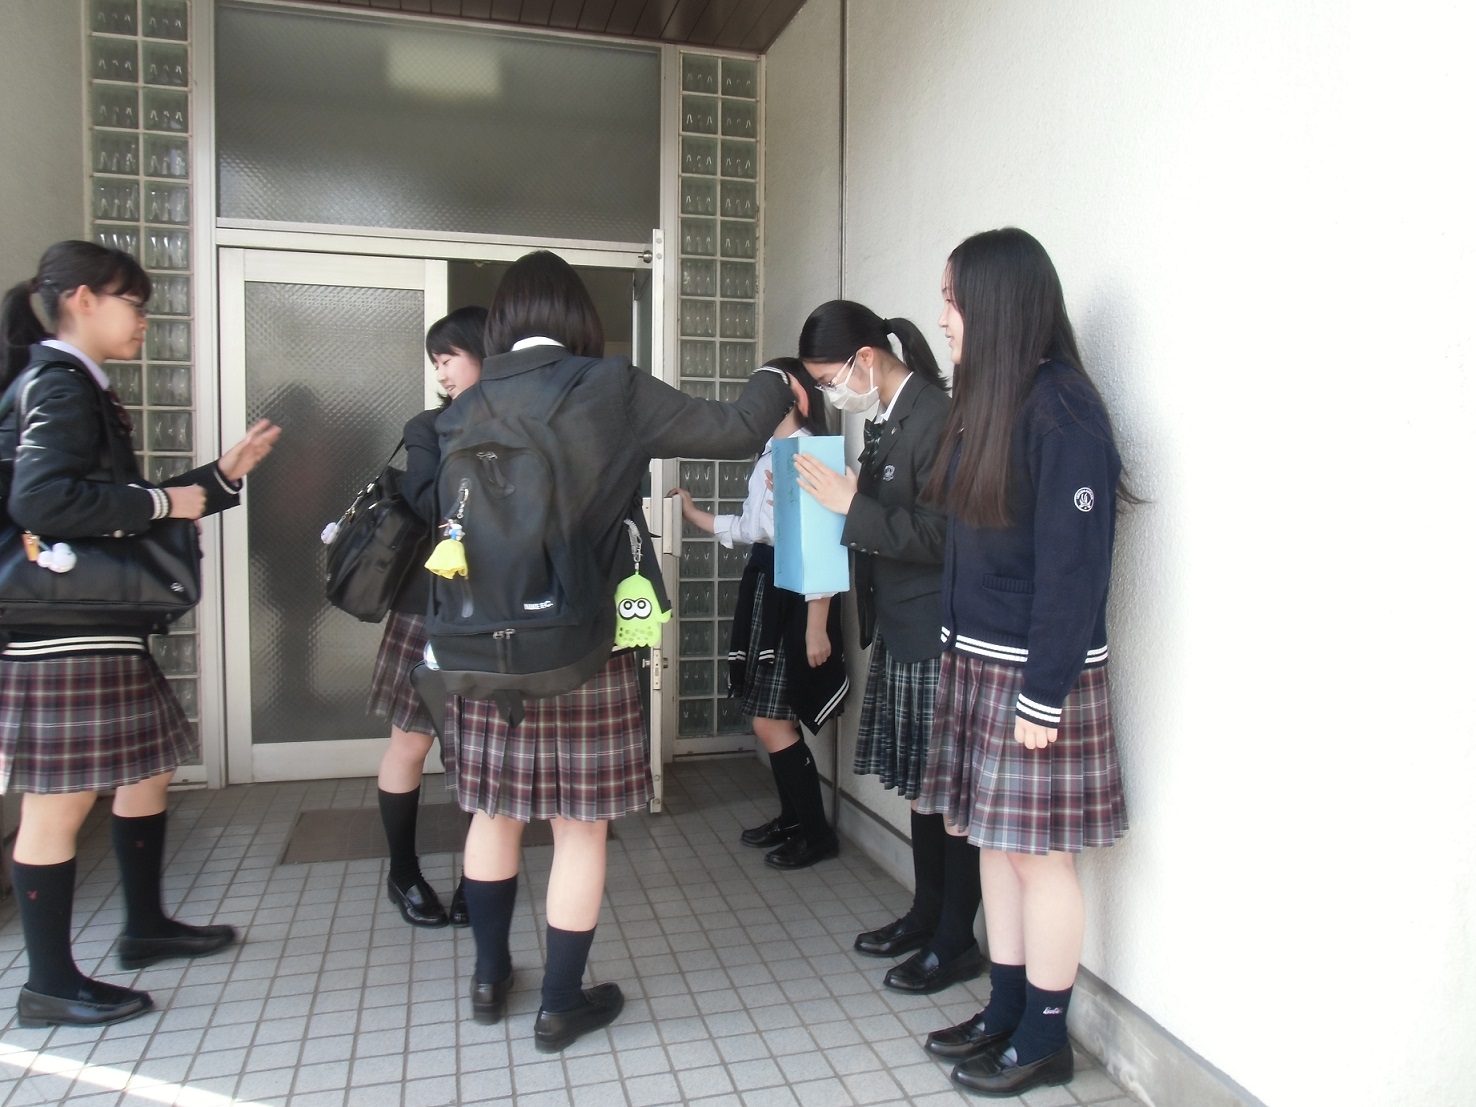 4月19日 4月26日 熊本地震の募金活動を行っています 植草学園大学附属高等学校